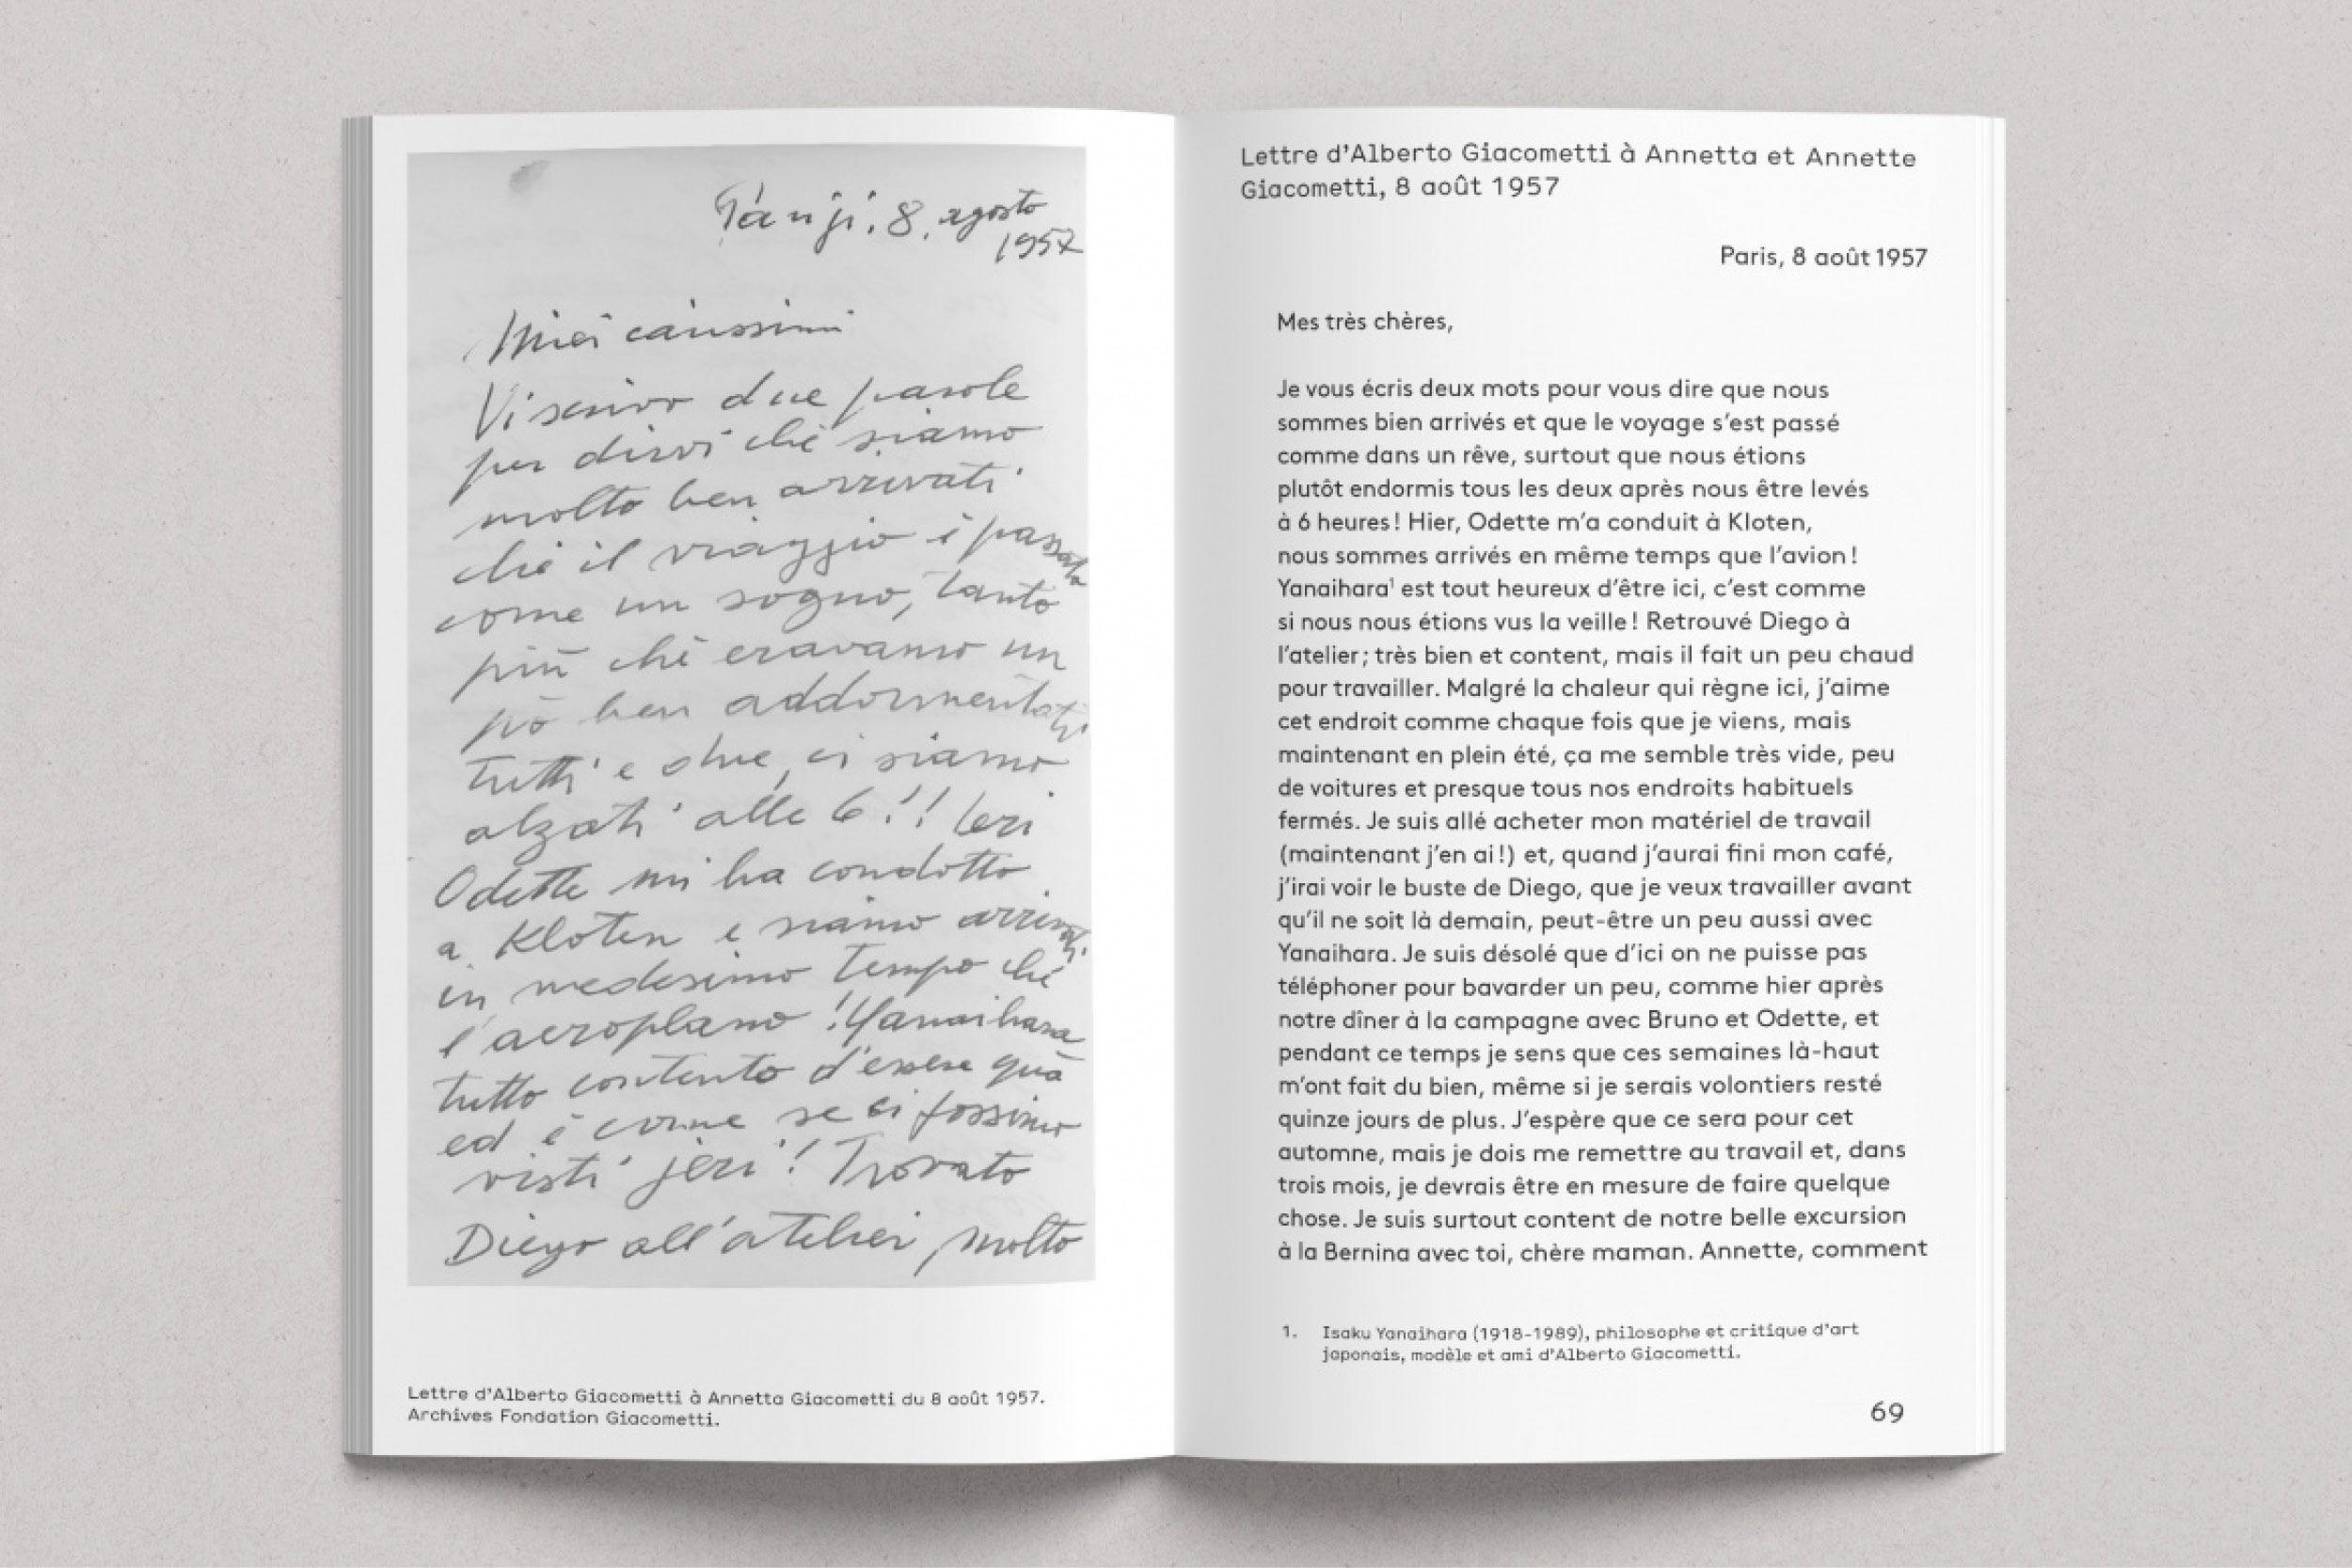 Lettres d'Alberto Giacometti à sa famille